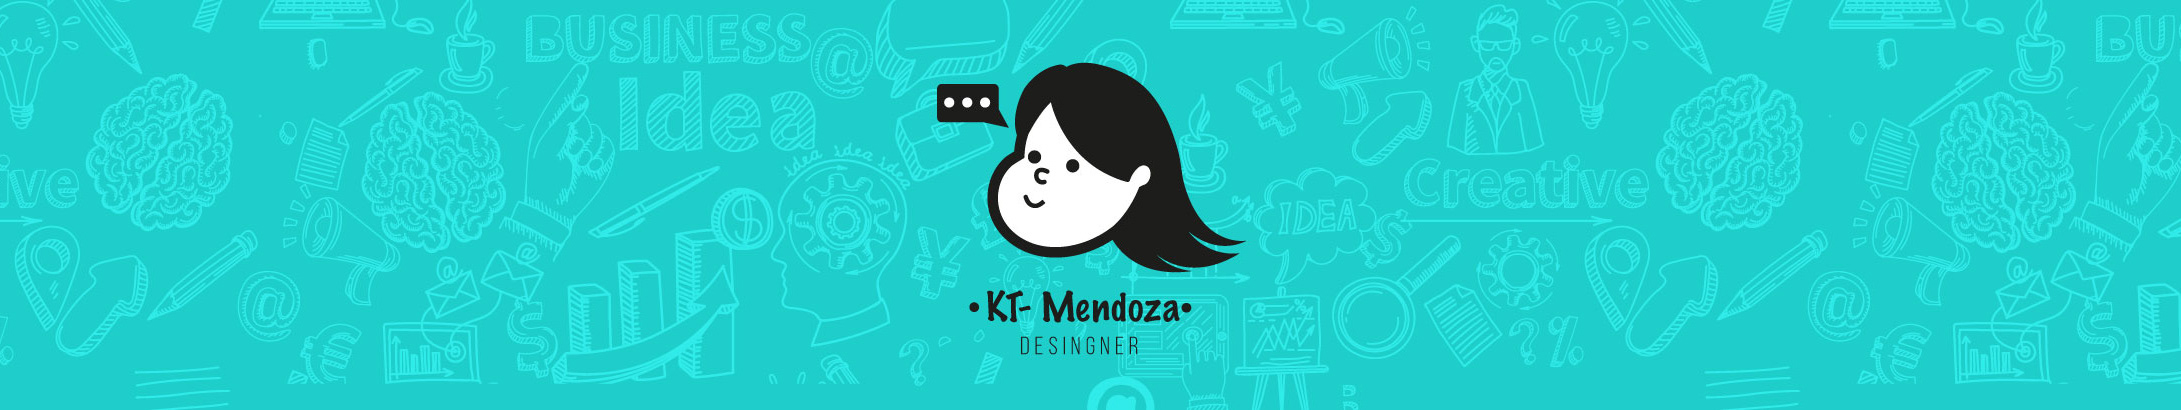 KT Mendoza's profile banner